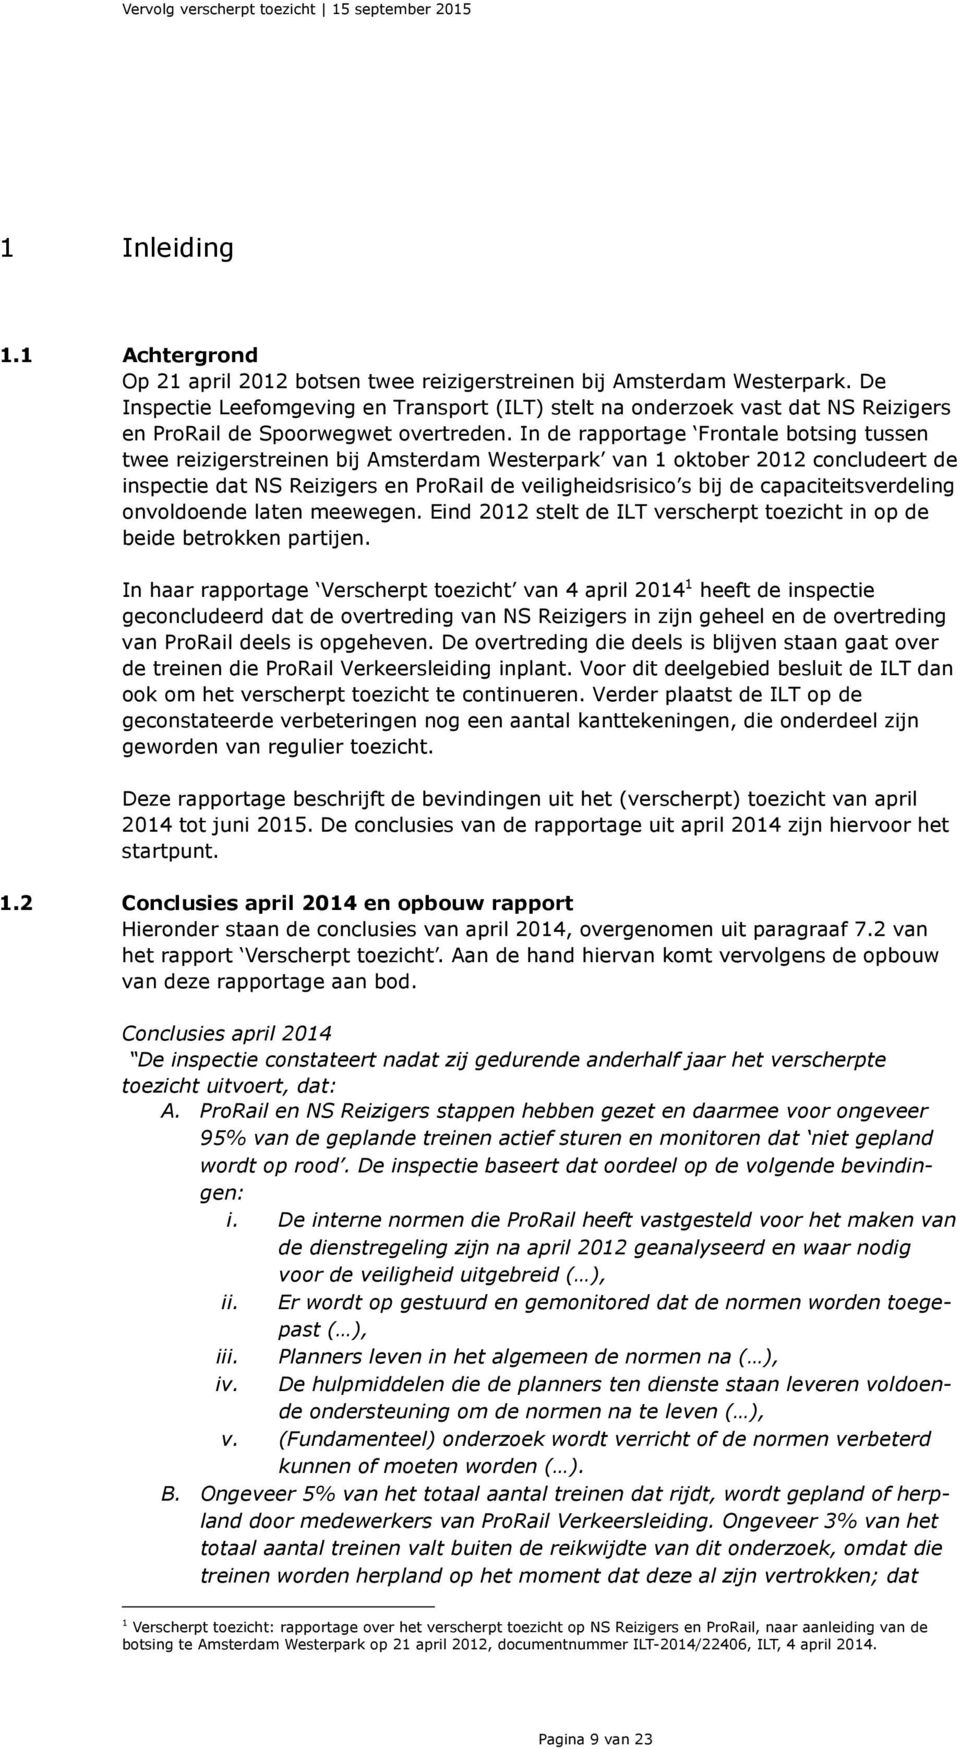 In de rapportage Frontale botsing tussen twee reizigerstreinen bij Amsterdam Westerpark van 1 oktober 2012 concludeert de inspectie dat NS Reizigers en ProRail de veiligheidsrisico s bij de